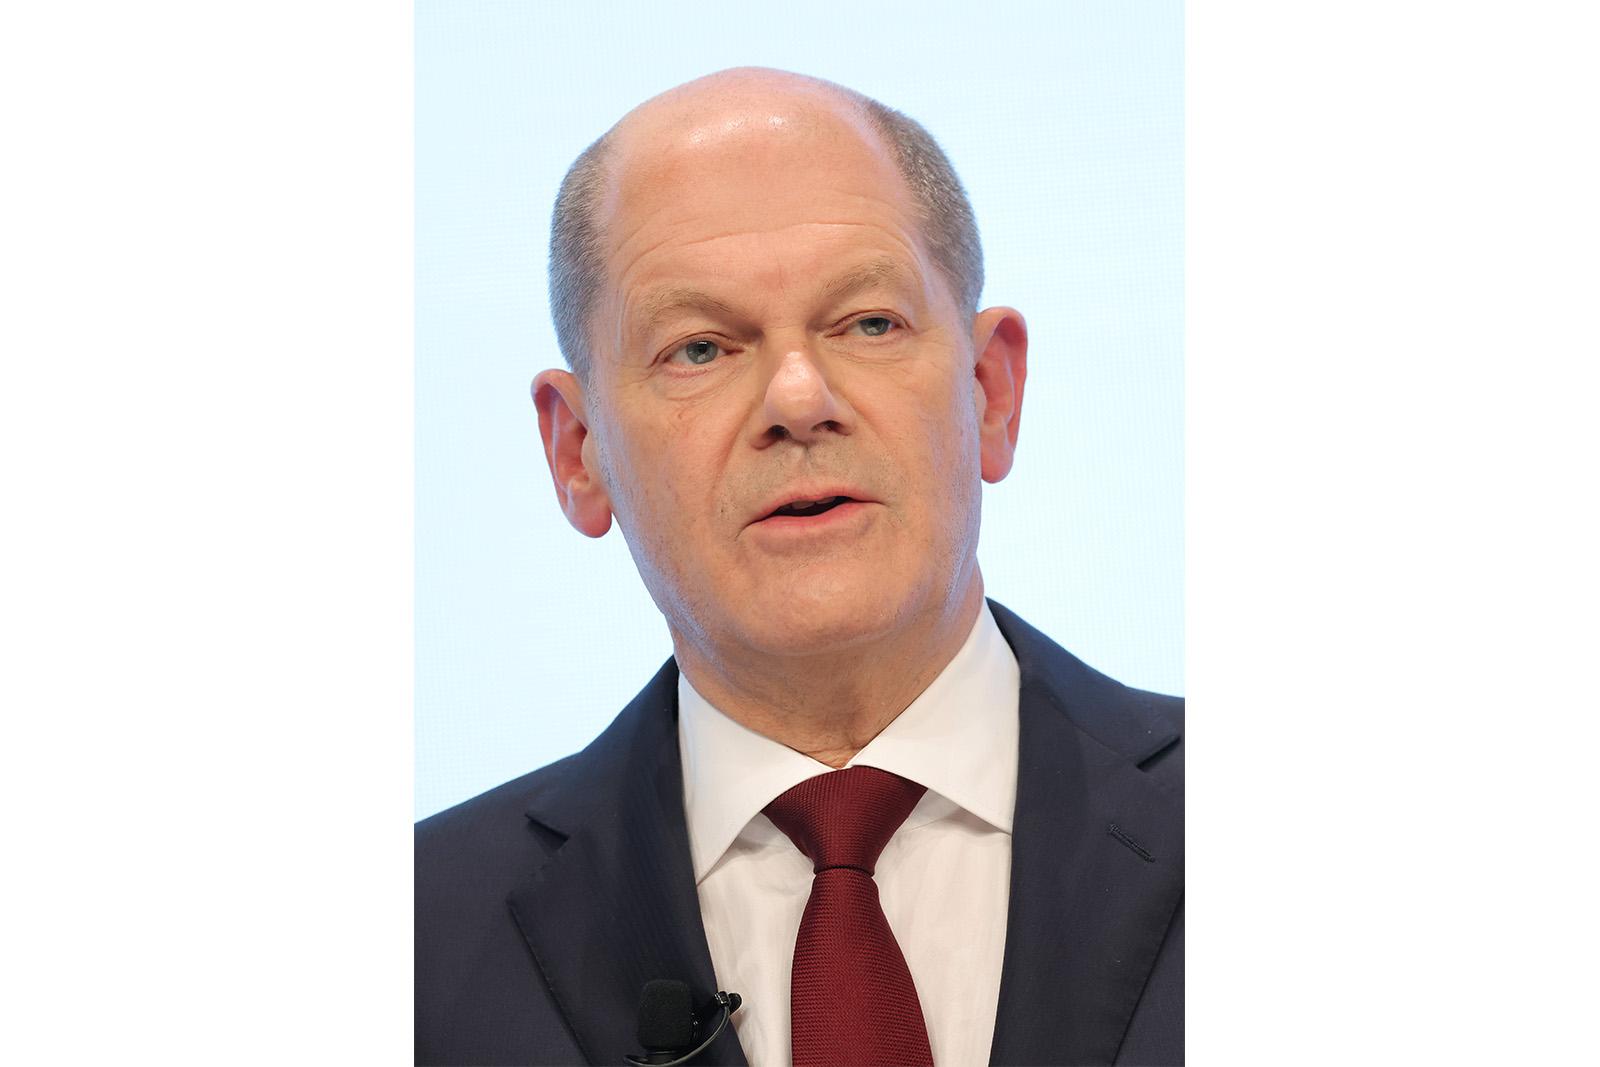 Vice Chancellor Olaf Scholz